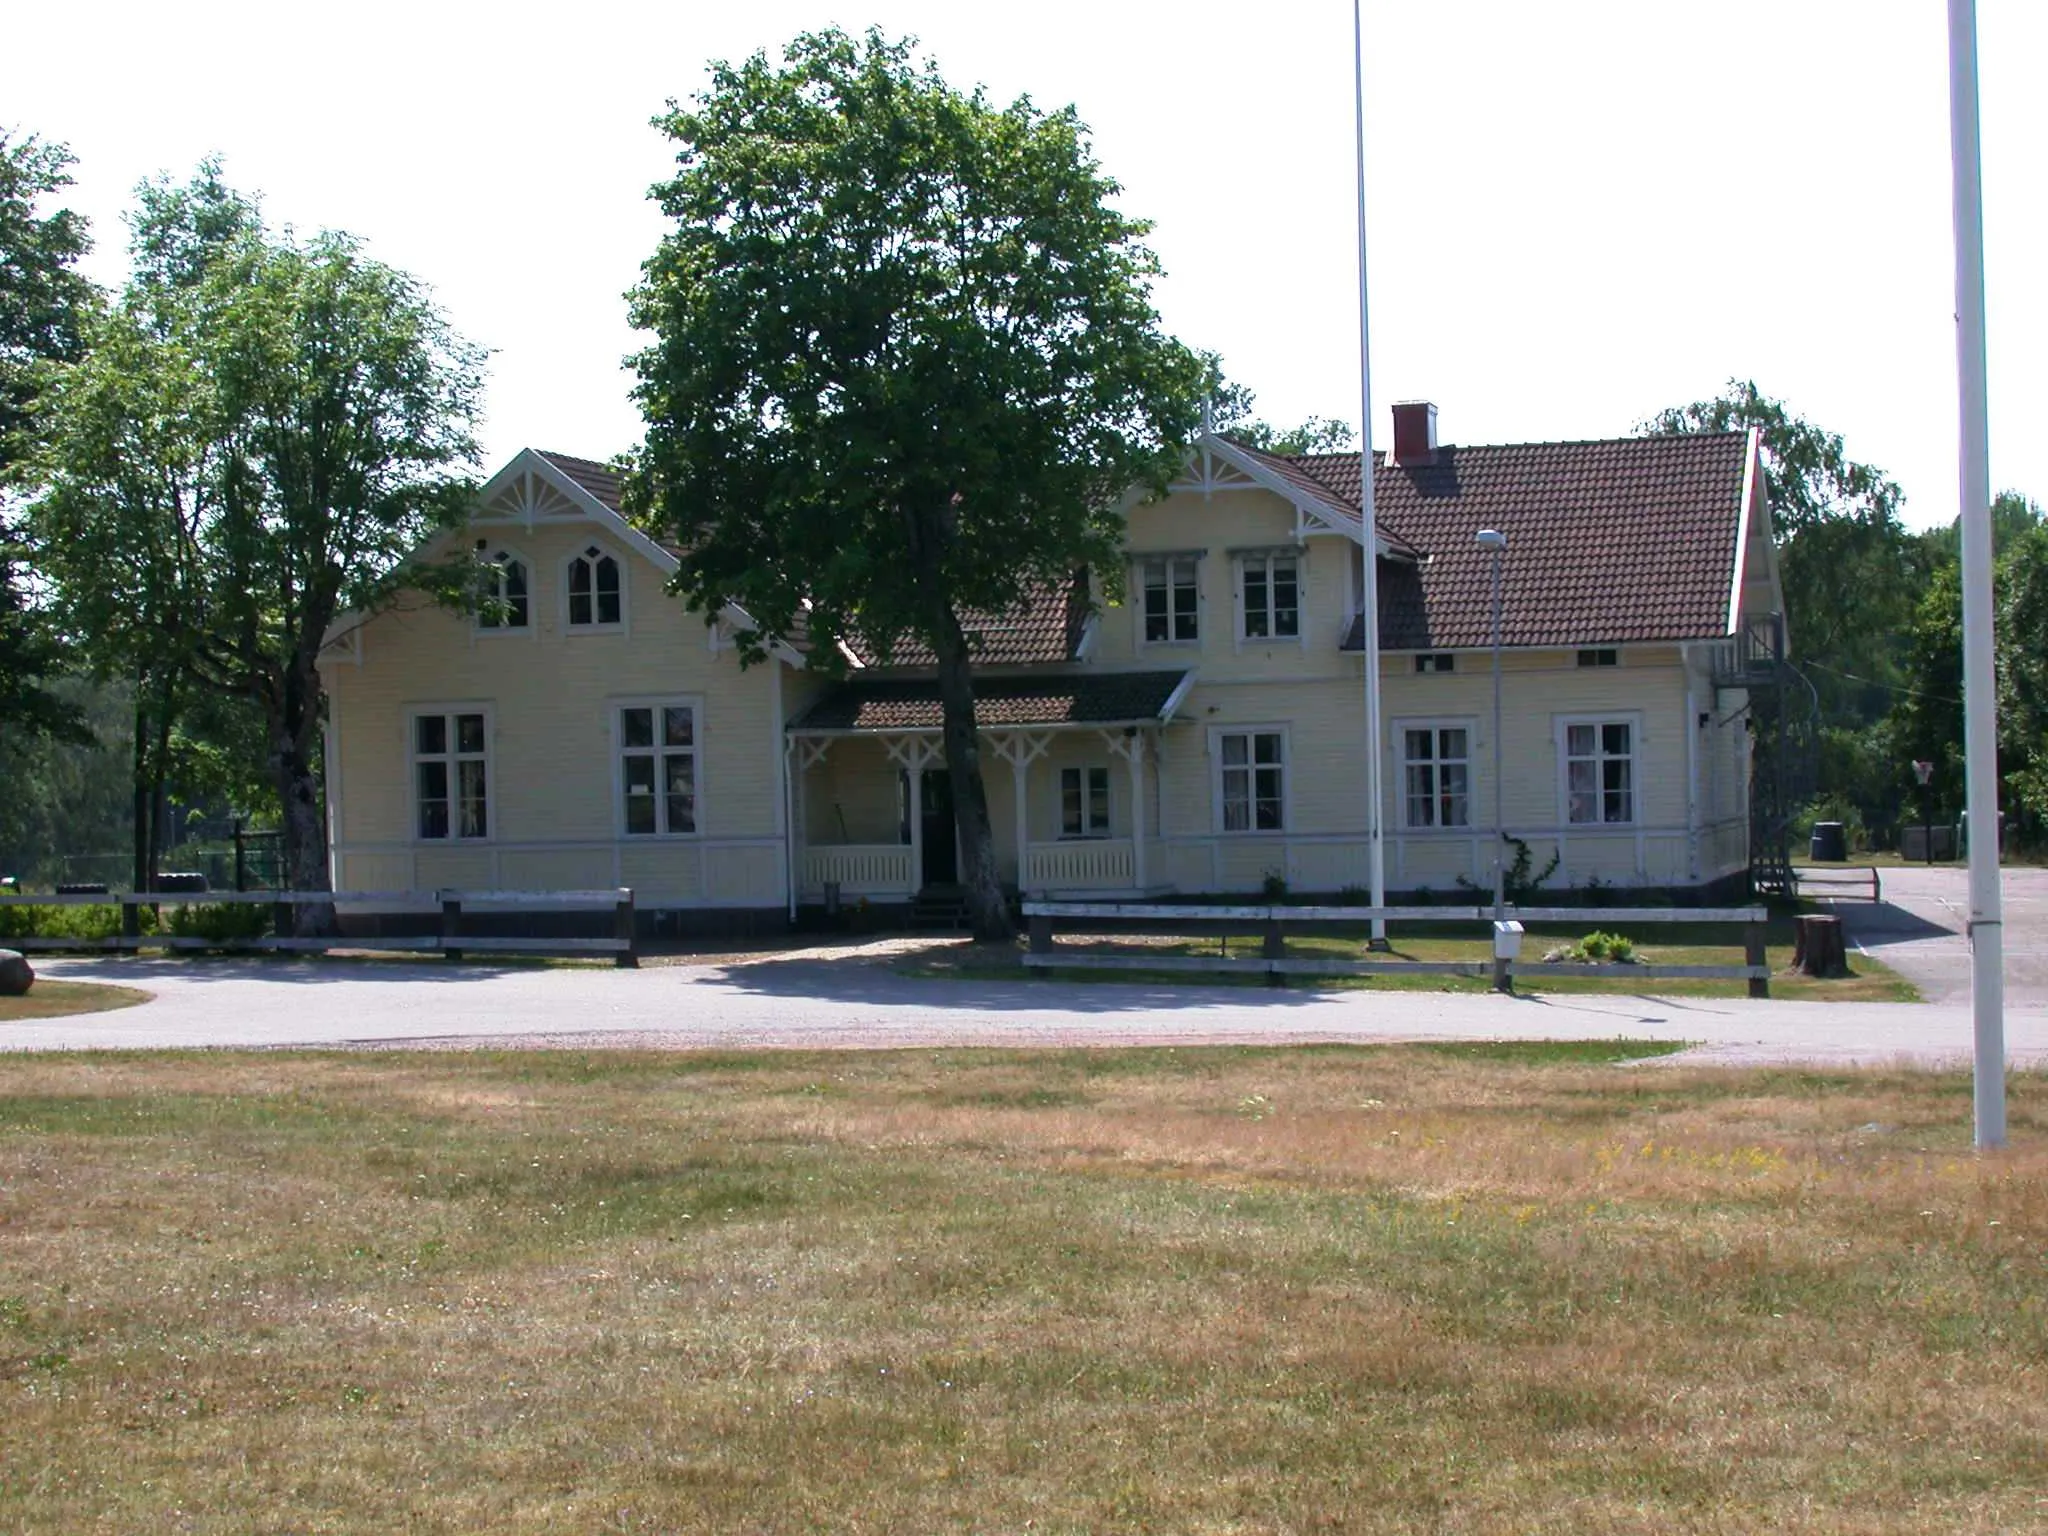 Photo showing: Bäckebo school, Bäckebo, Nybro, Sweden. Photo by Riggwelter, July 7, 2006.